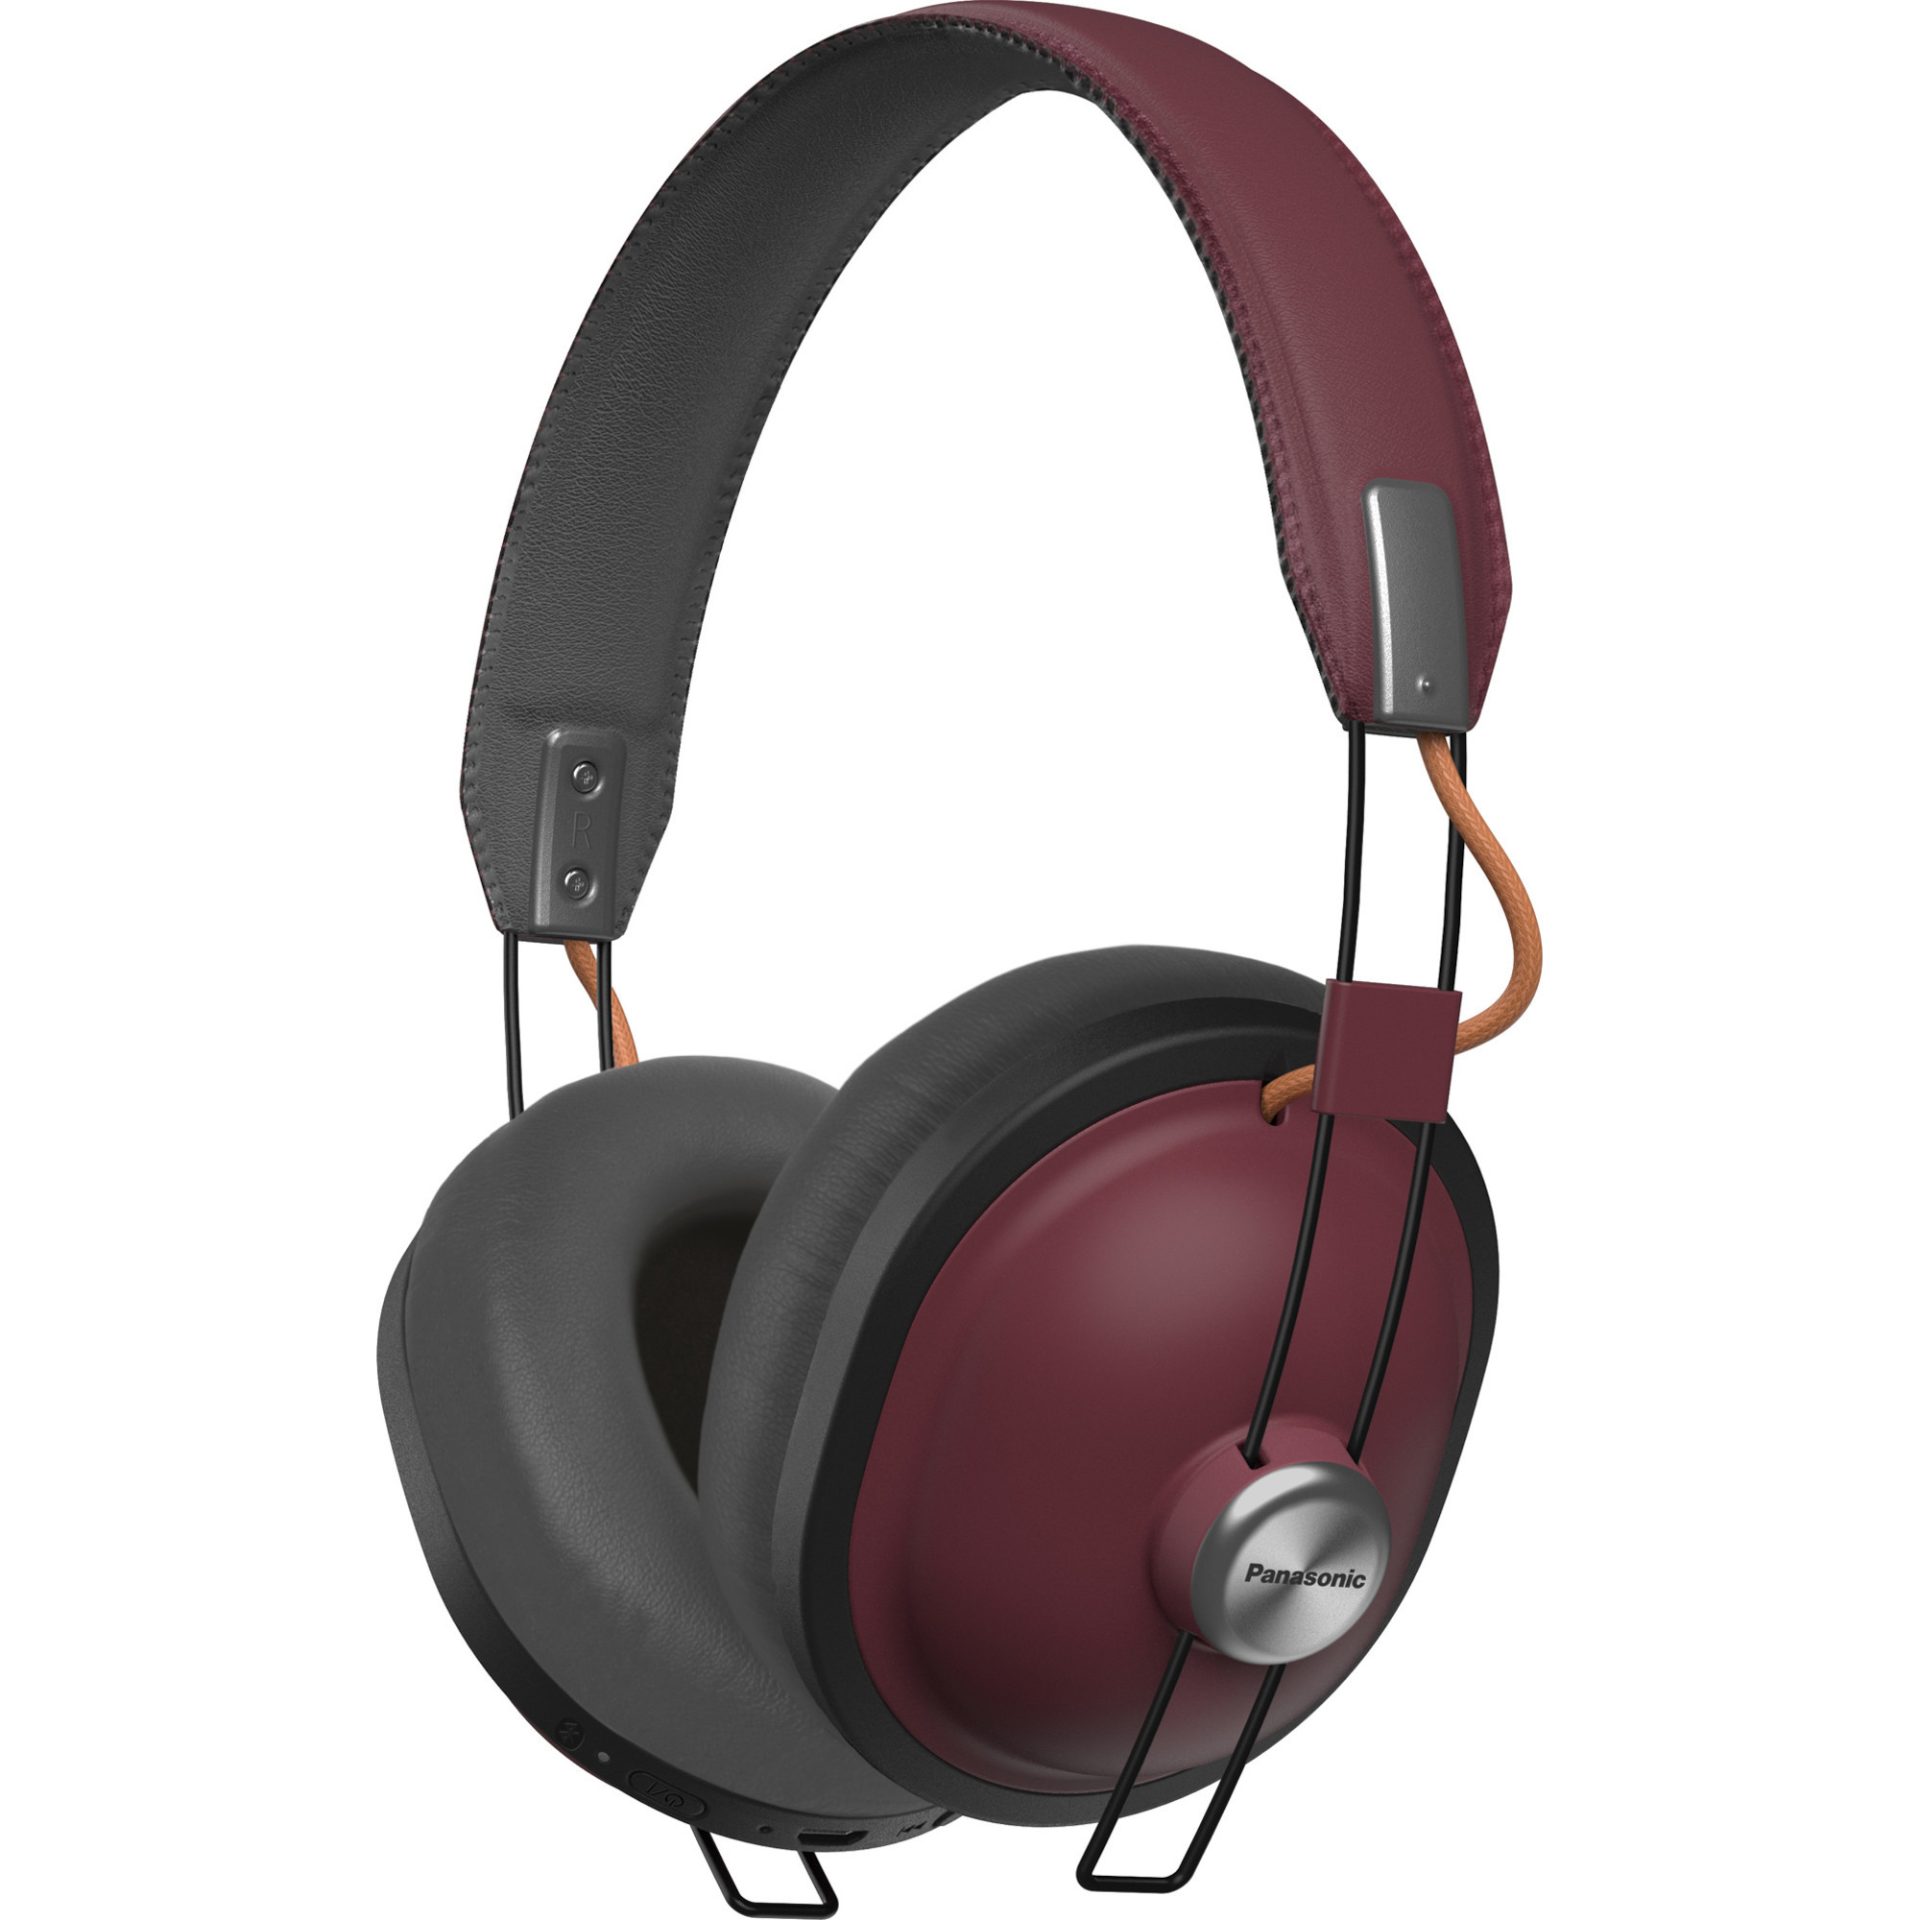 Panasonic RP-HTX80 bezdrátová Bluetooth sluchátka přes uši v retro stylu (40mm měniče, acoustic bass control filtr, 24h přehrávání), červená